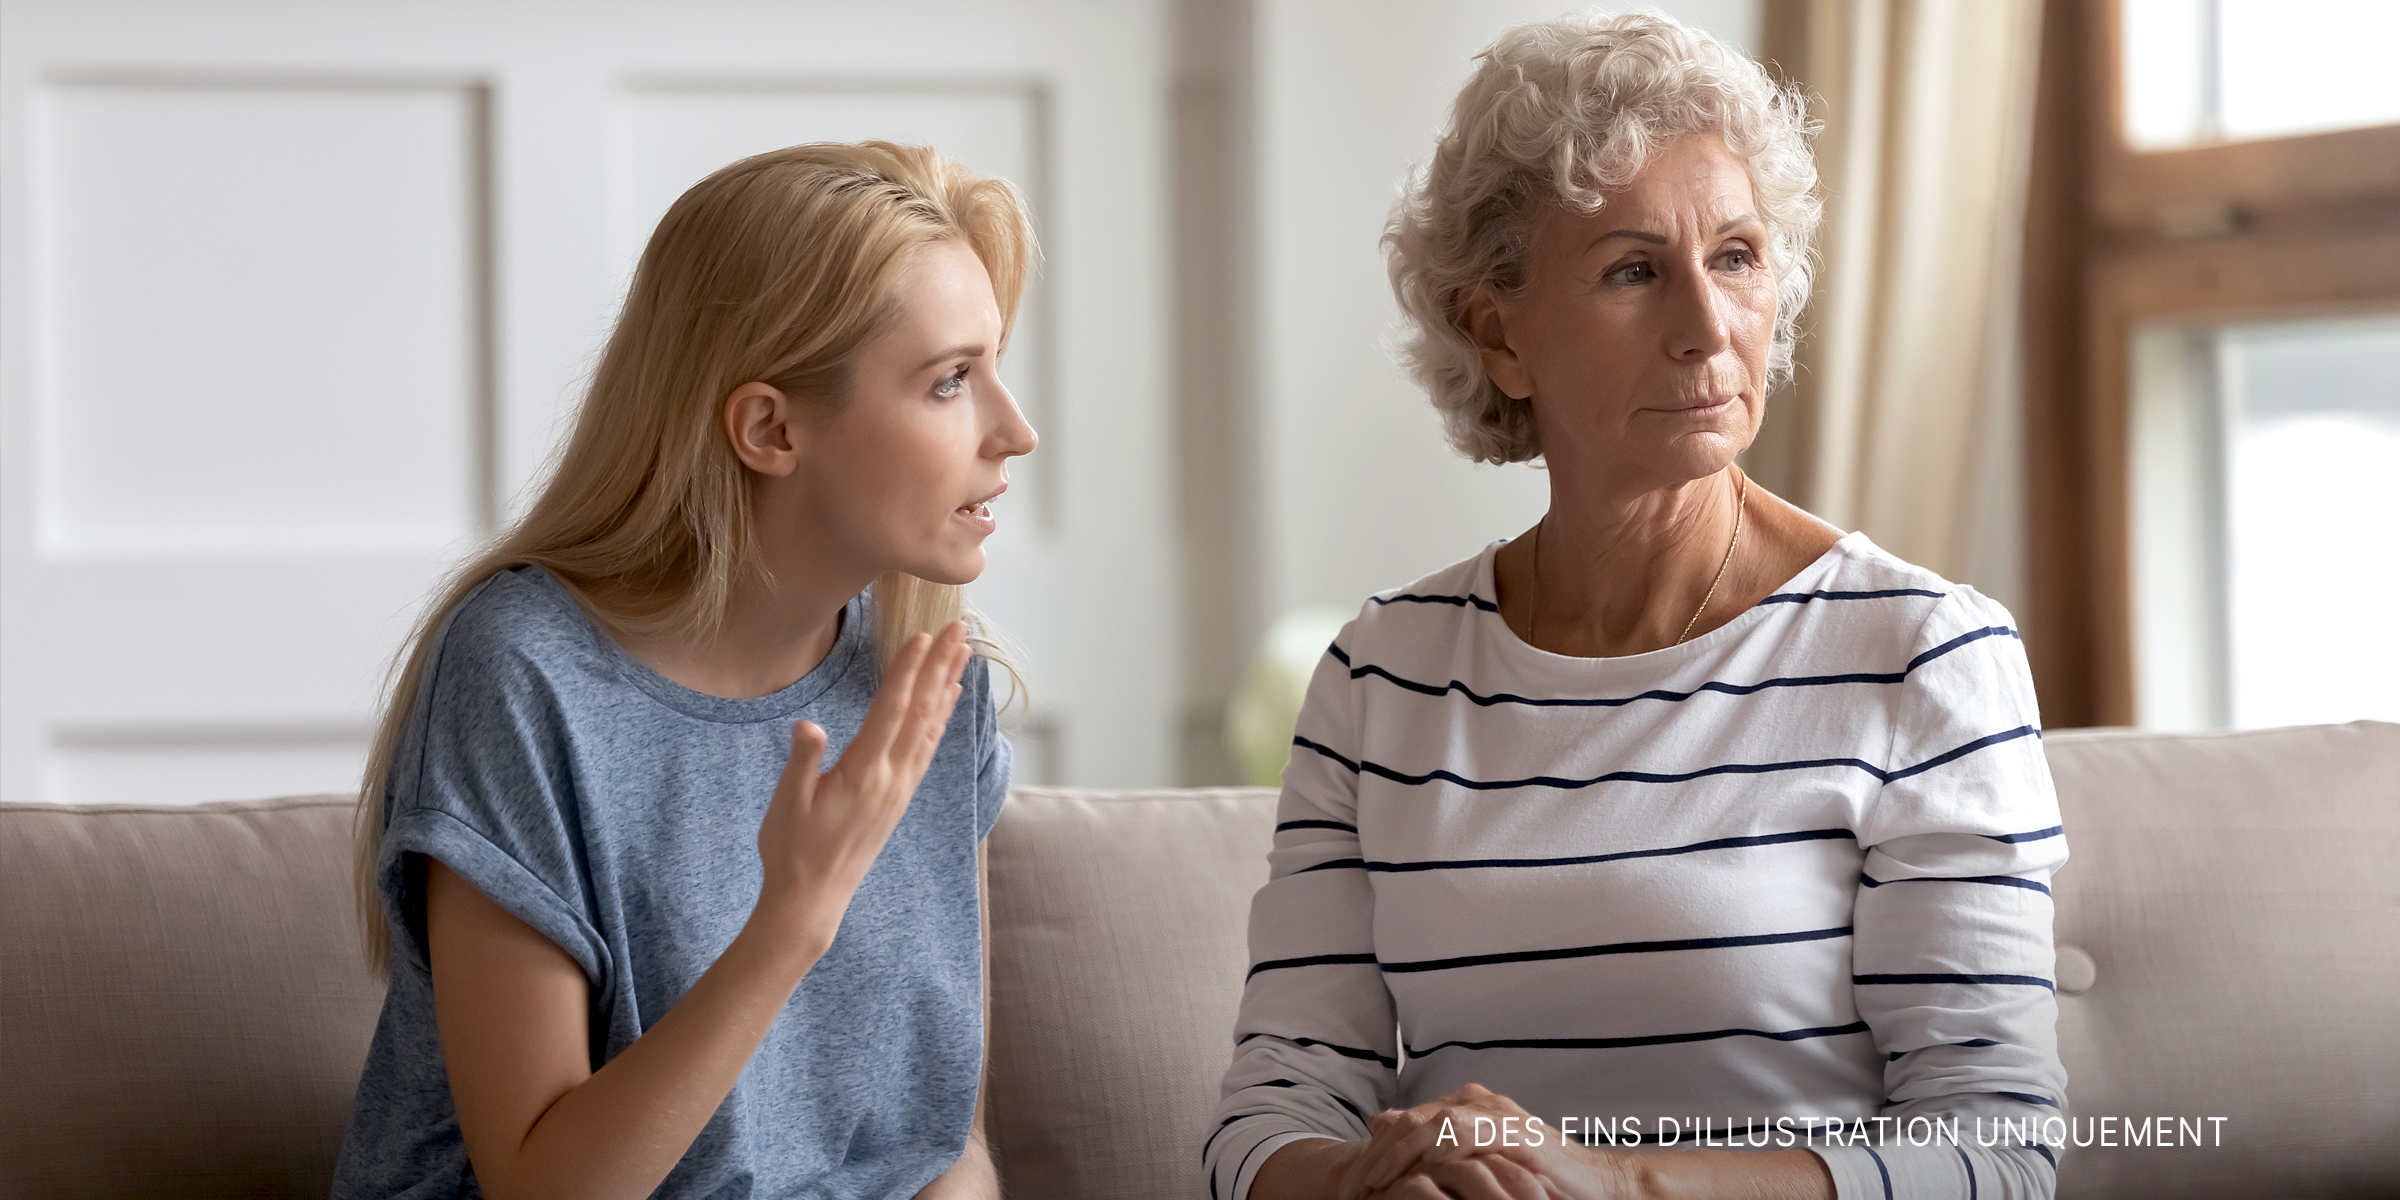 Une jeune femme parlant sévèrement à une femme plus âgée | Source : Shutterstock